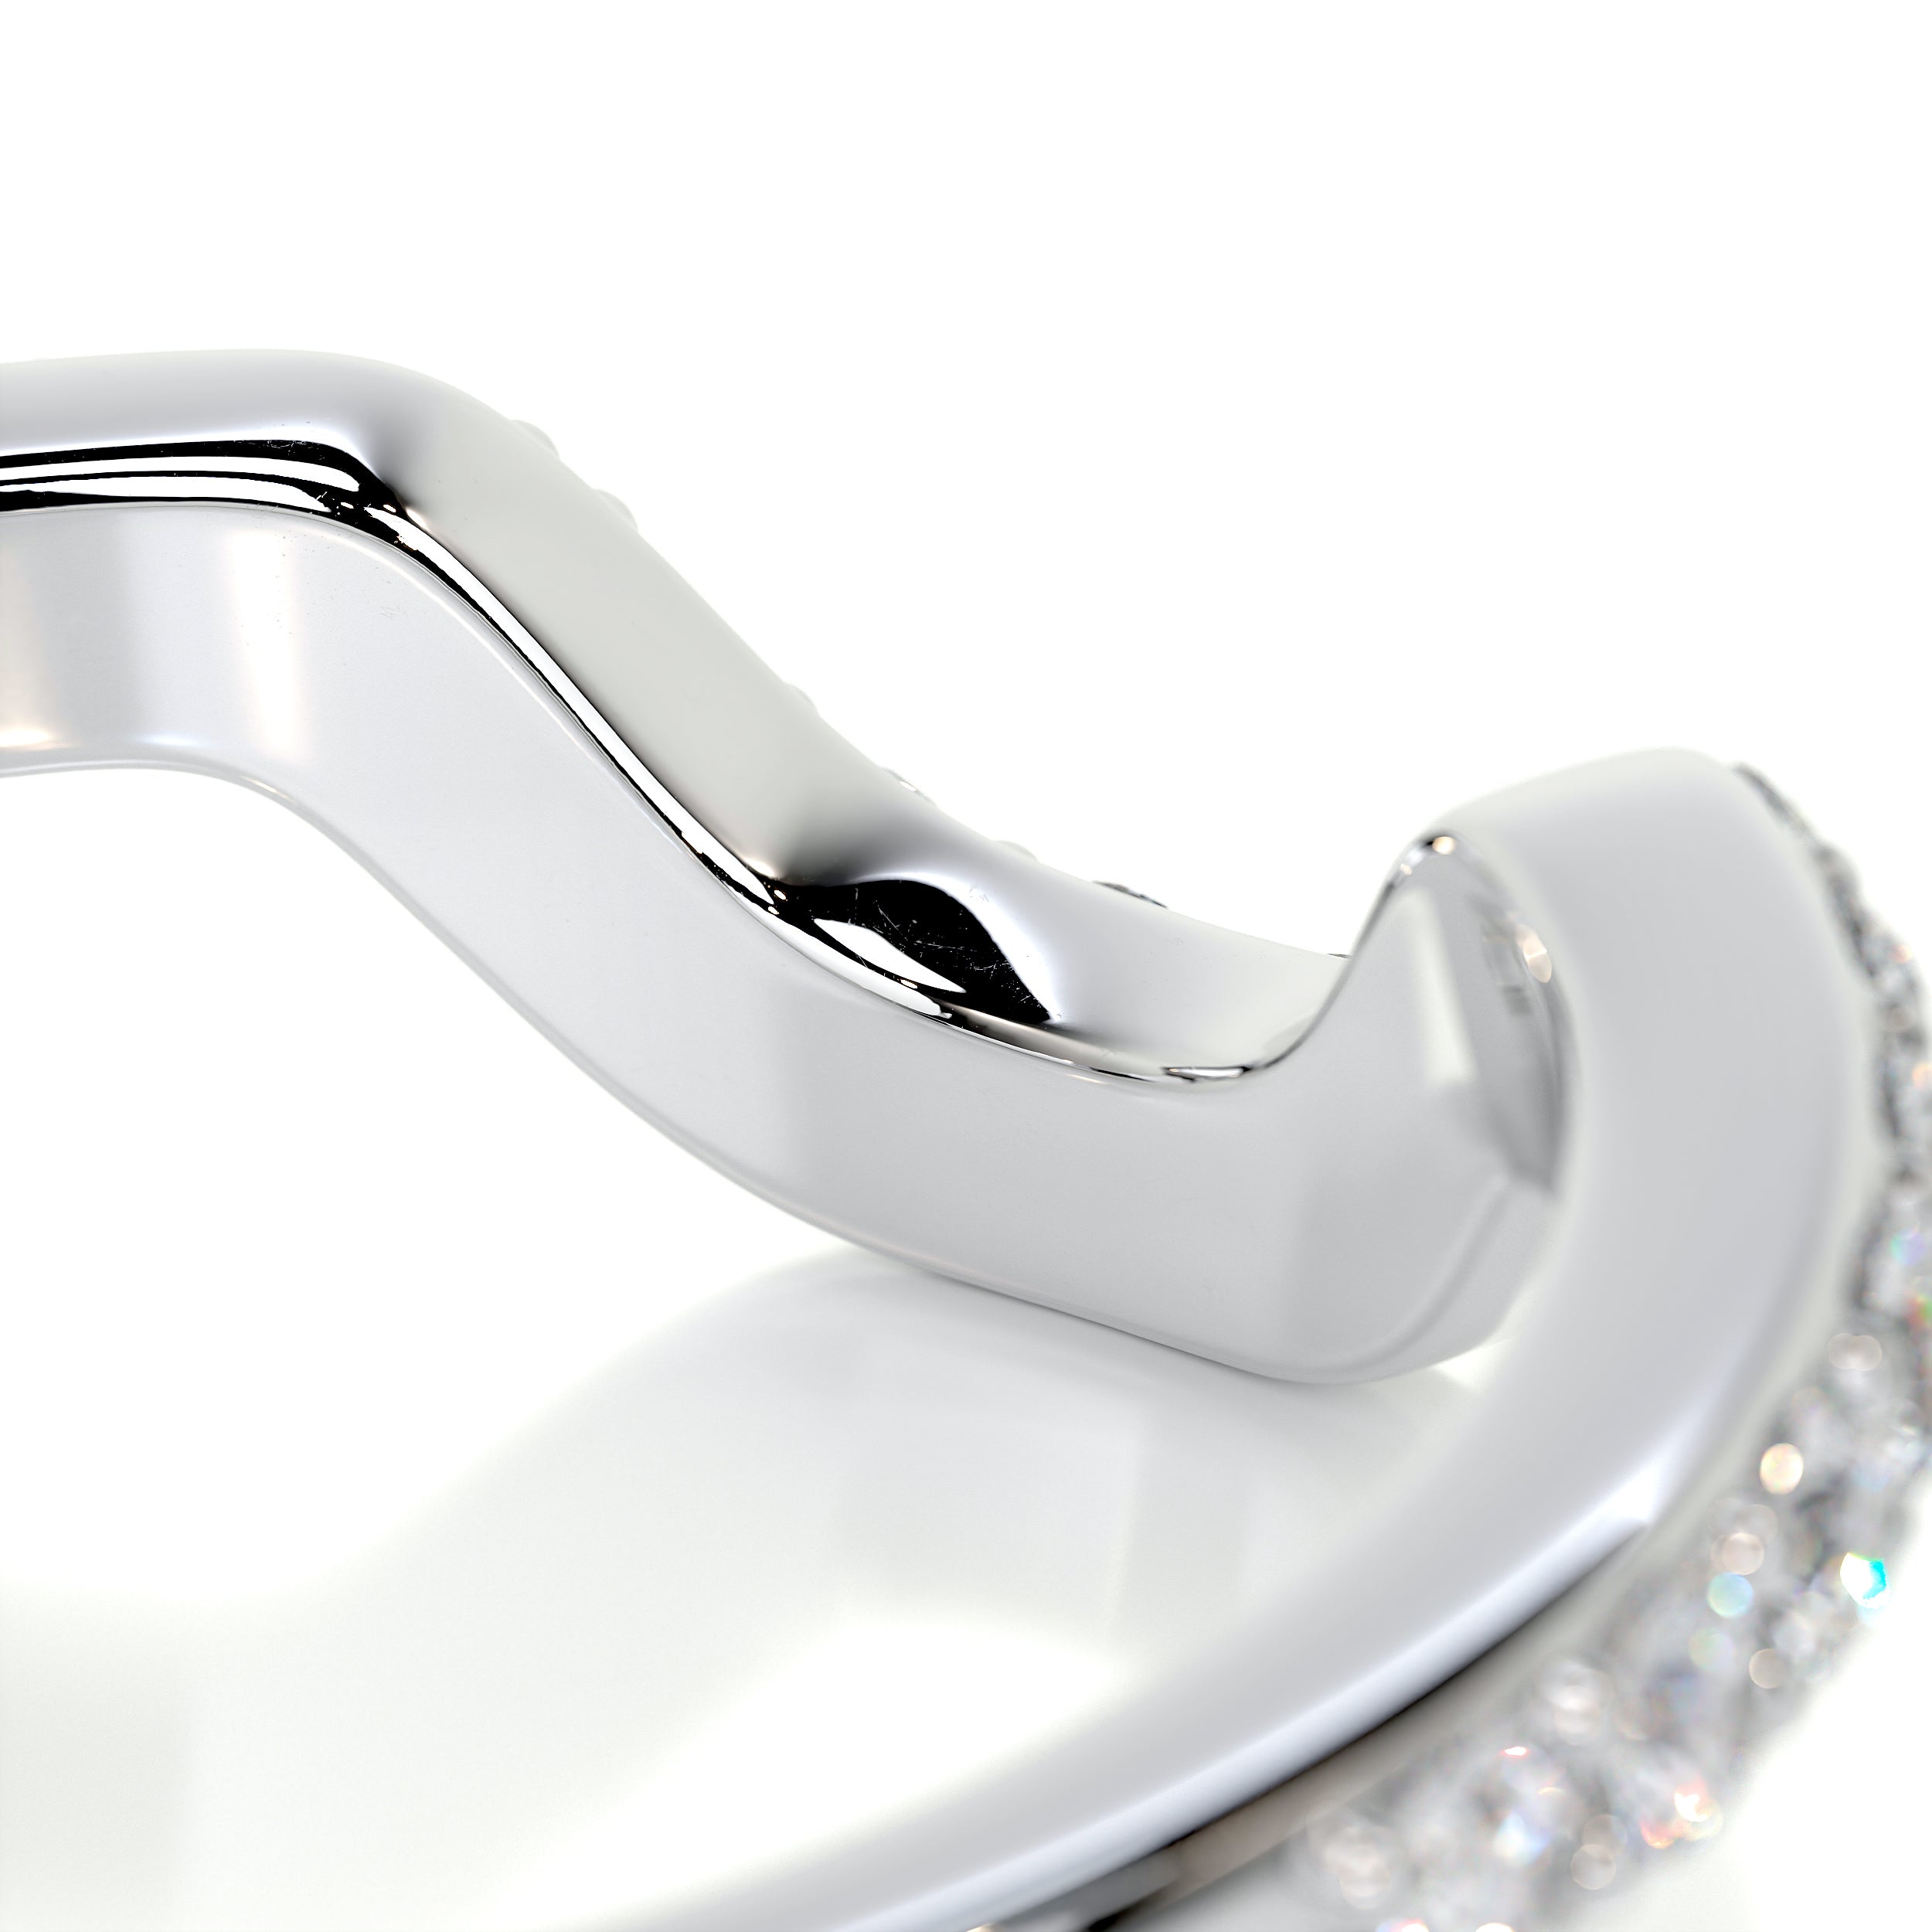 Nina Diamond Wedding Ring   (0.2 Carat) -Platinum